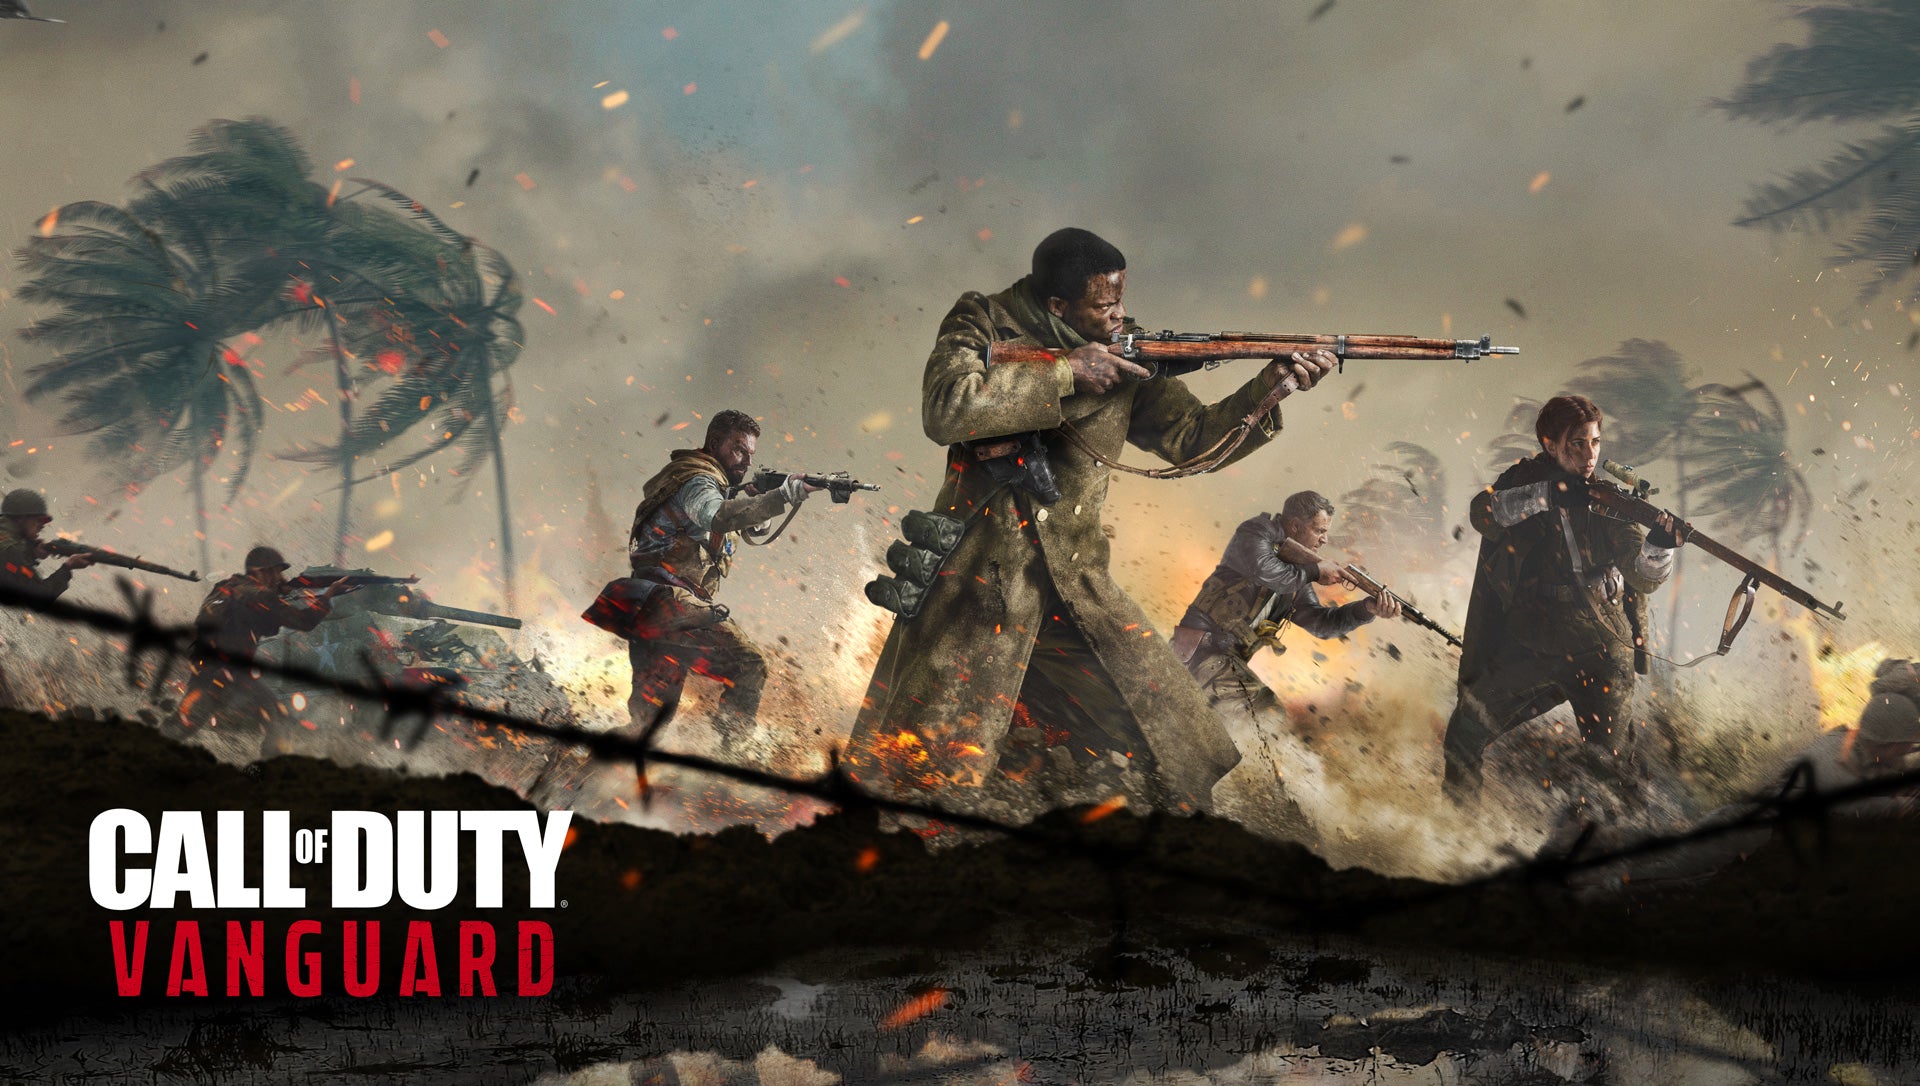 Rebélate en cada frente, Call of Duty®: Vanguard se lanzará el 5 de noviembre